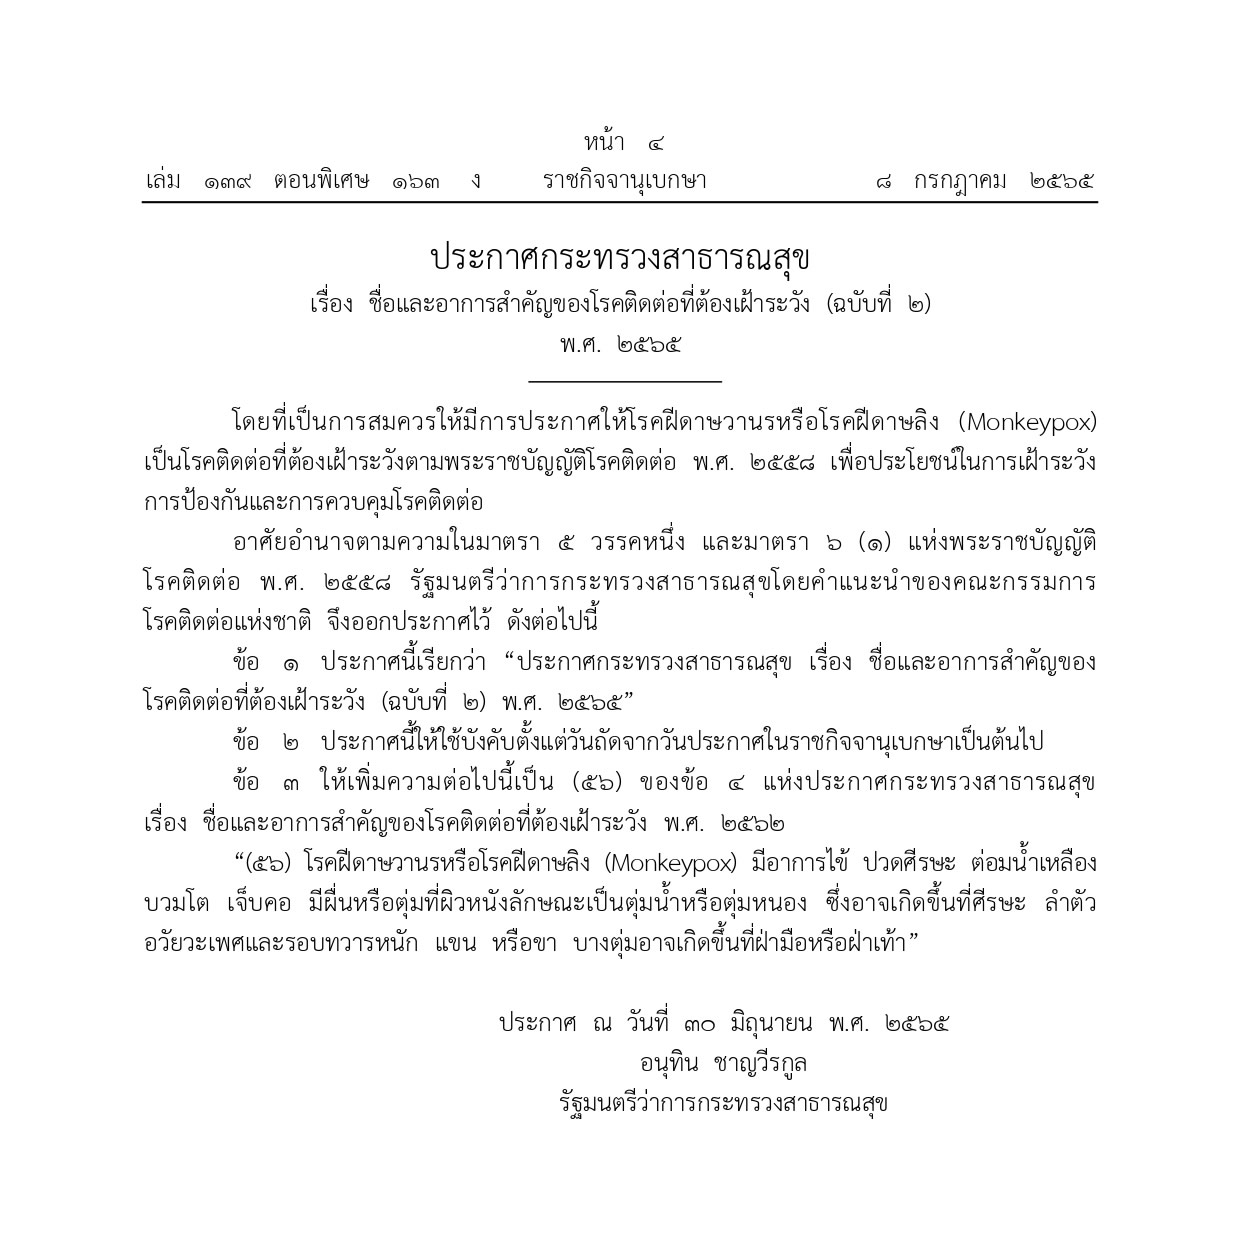 サル痘が監視すべき伝染病のリストに、タイ政府官報に掲載